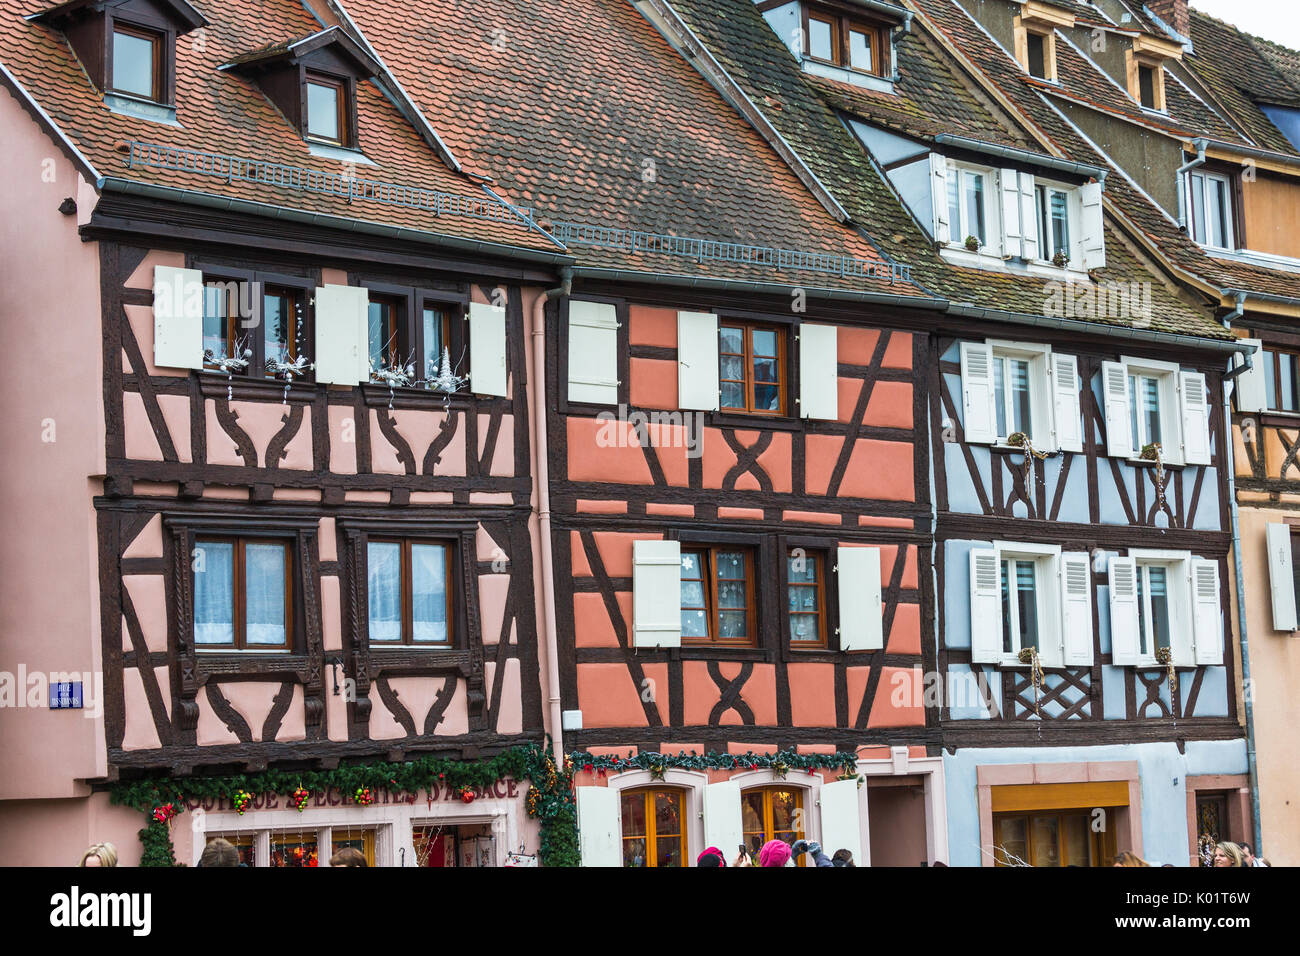 L'architecture typique de la vieille ville médiévale Petite Venise Colmar Haut-Rhin Alsace France Europe Banque D'Images